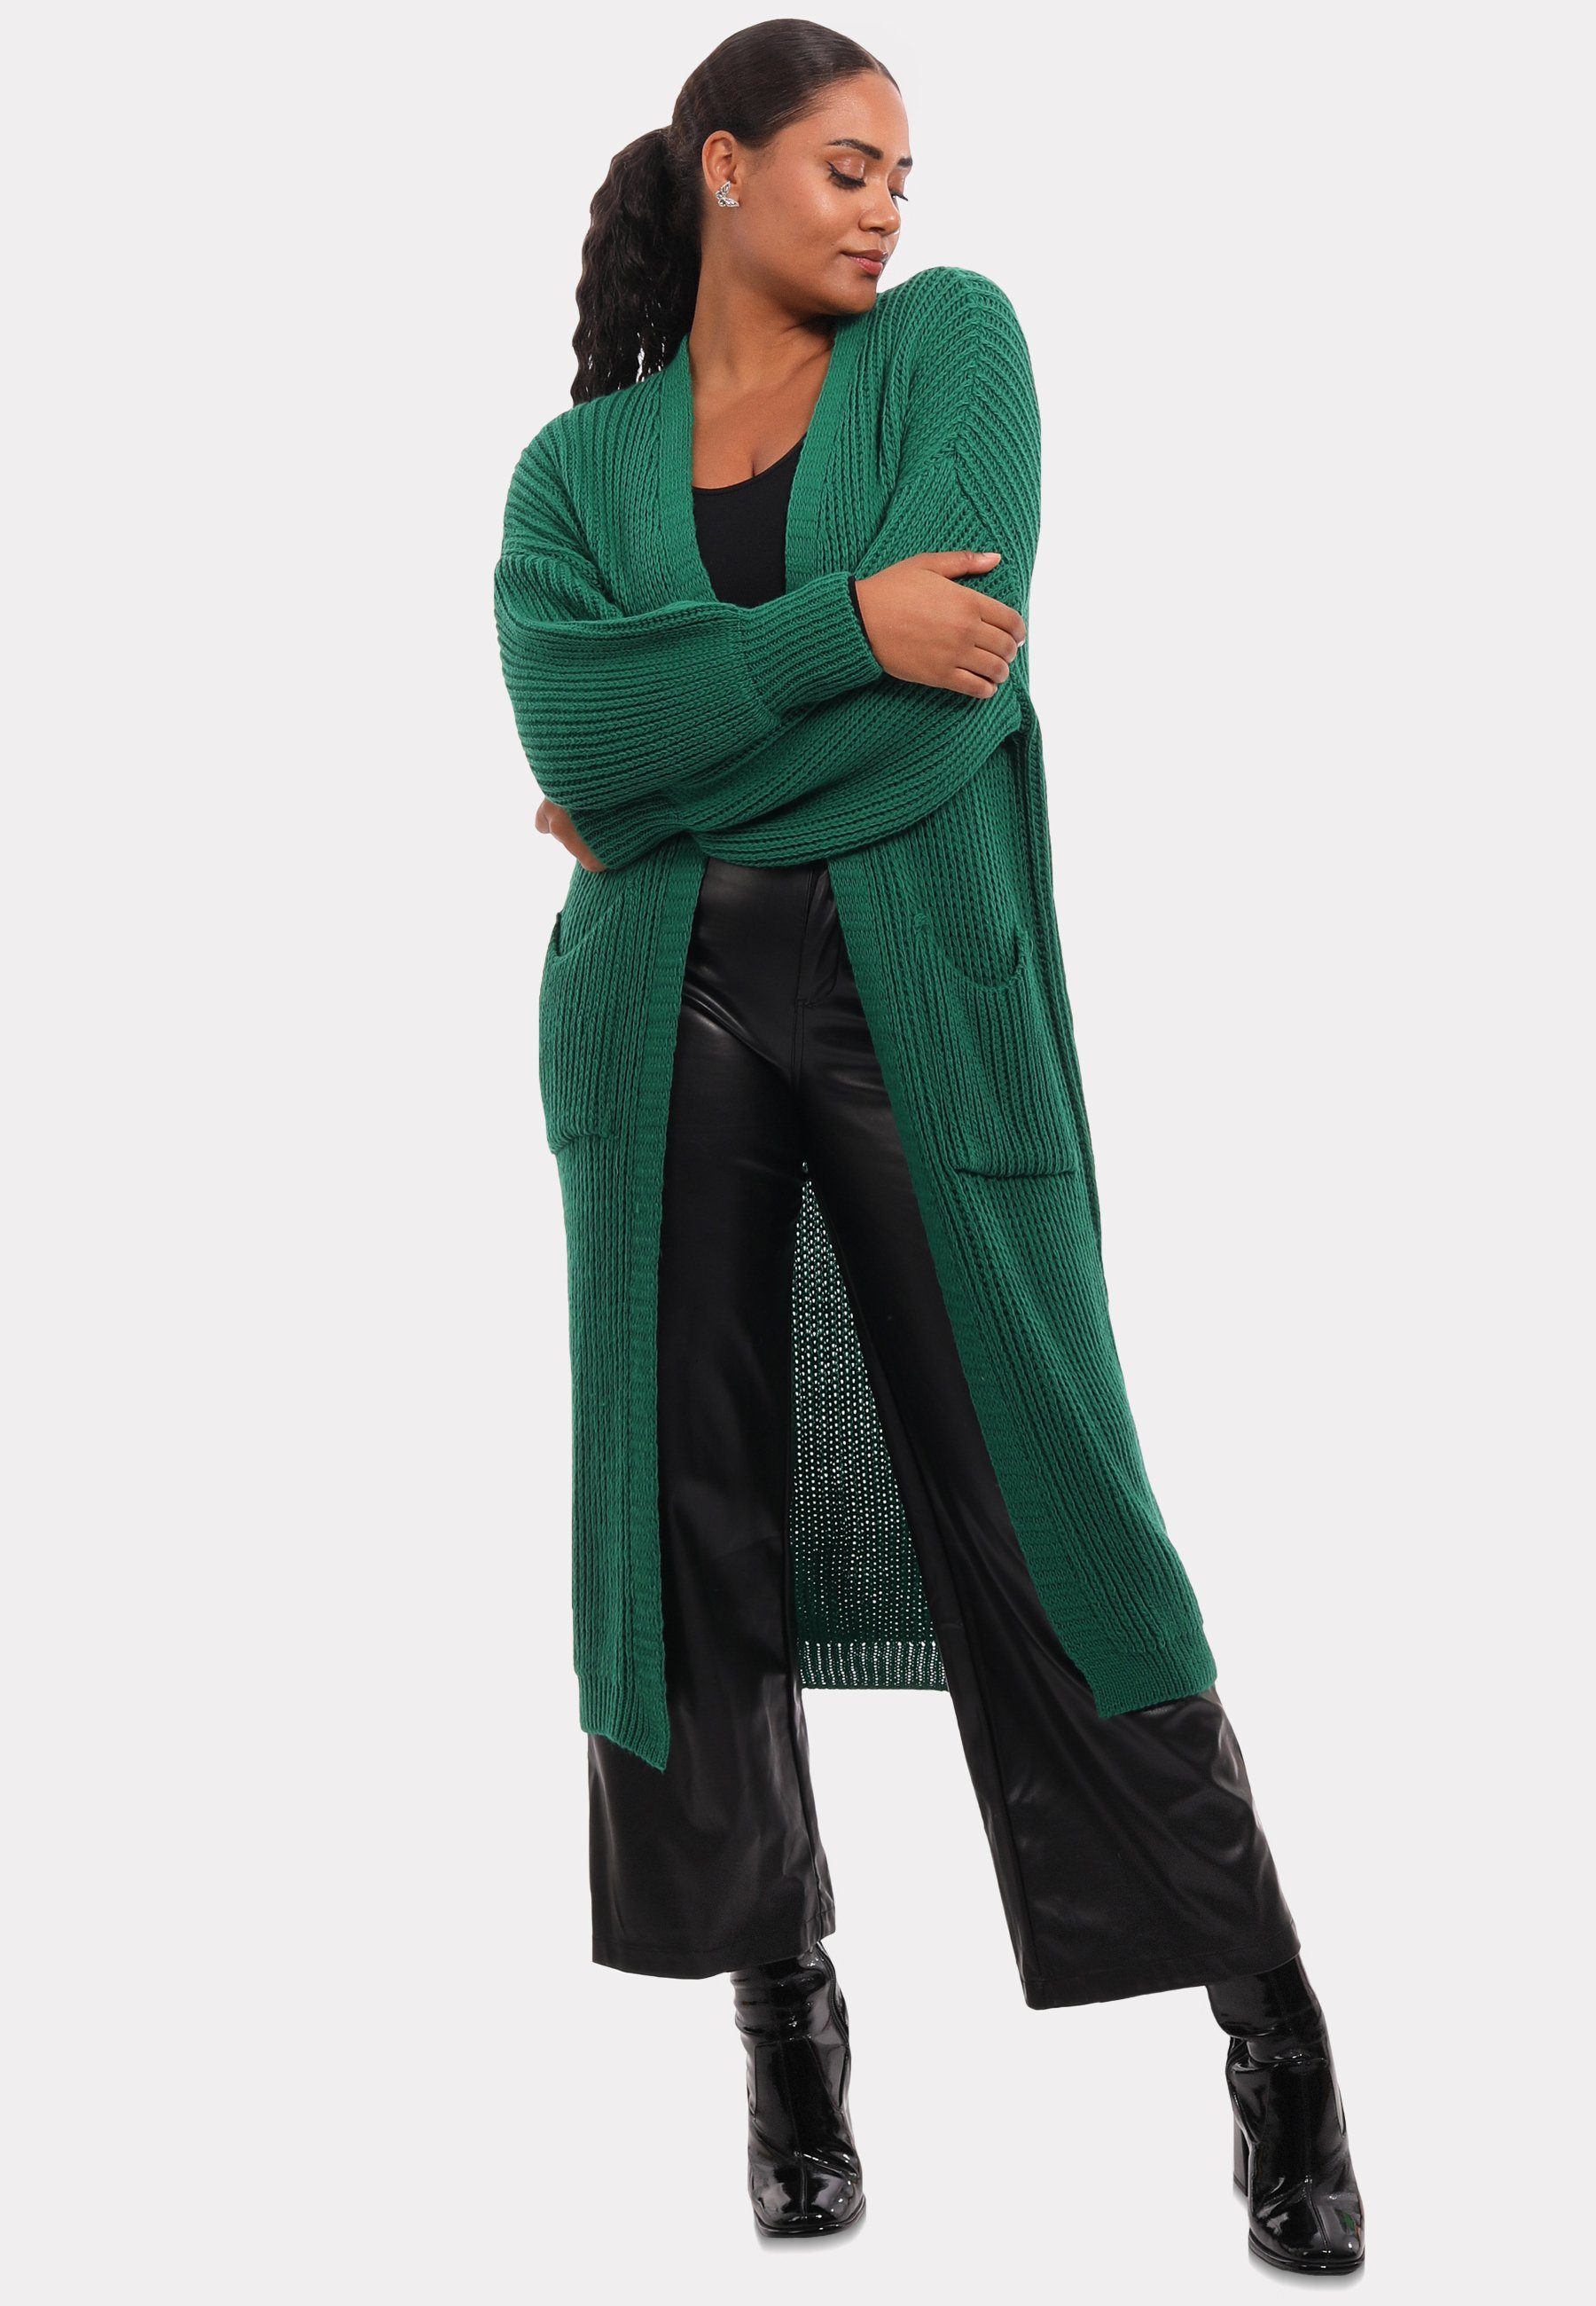 Cardigan Taschen Style YC & Unifarbe, Fashion Strickjacke in mit Cardigan aufgesetzten grün Verschlusslos Basic